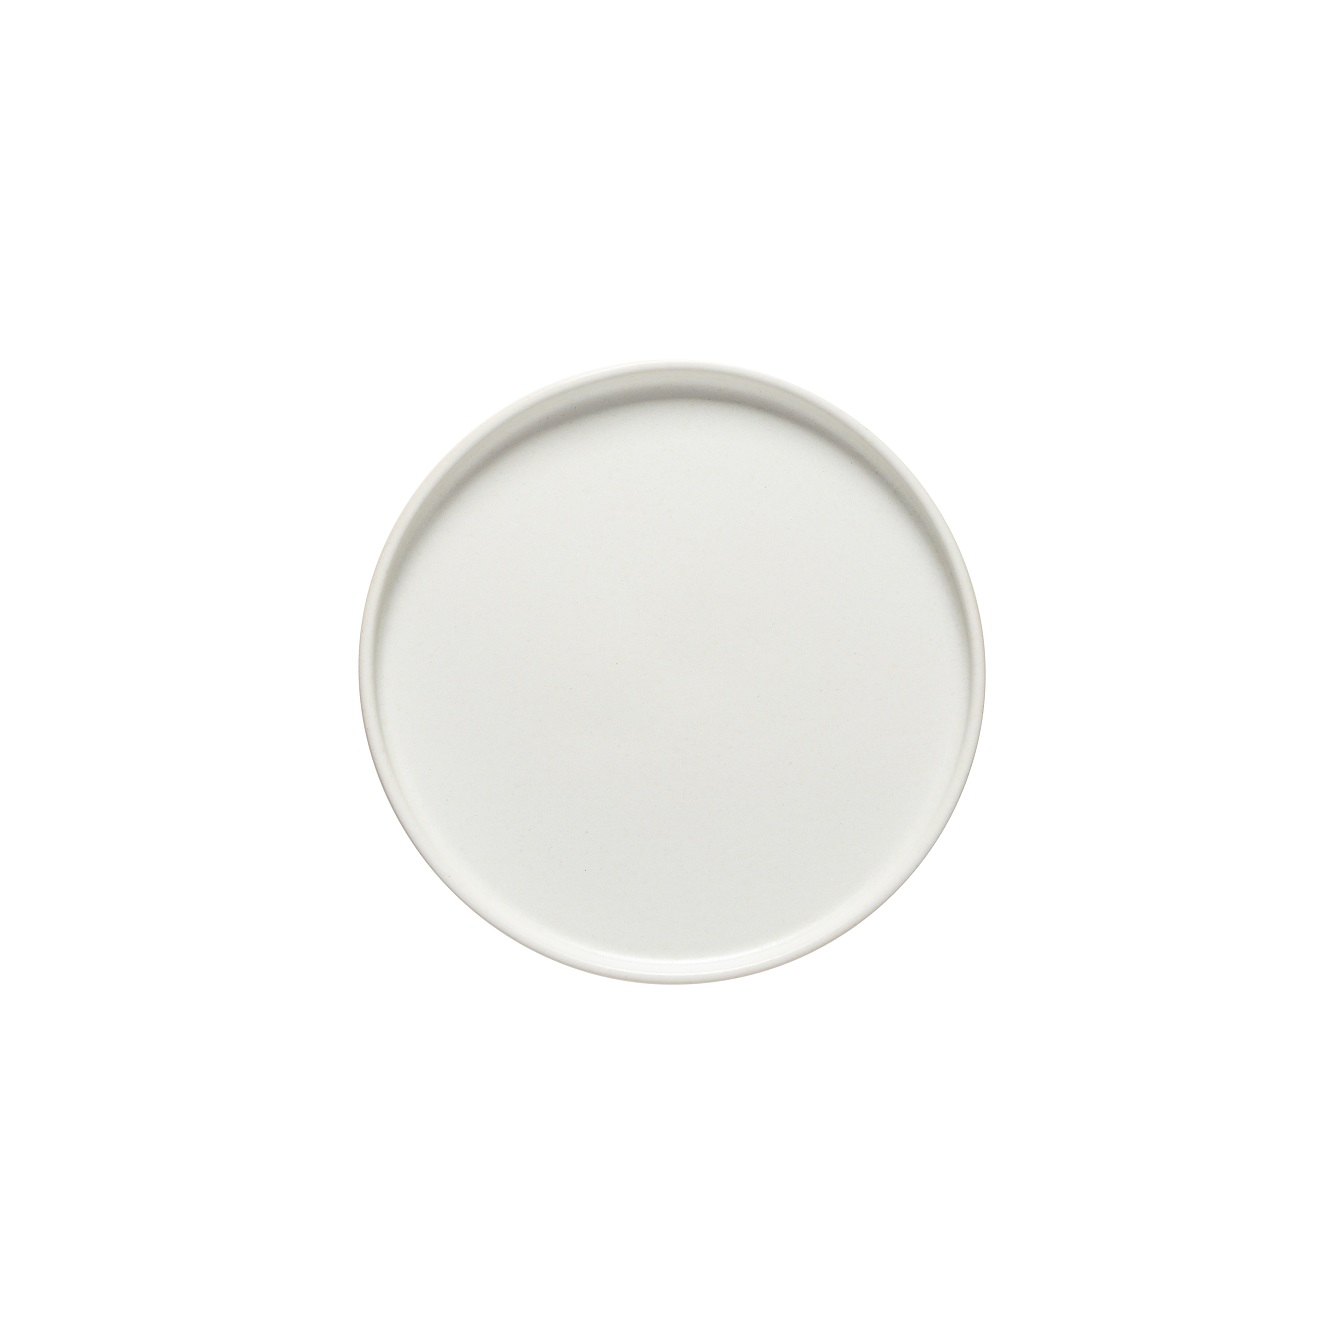 Redonda White Round Plate 21cm Gift